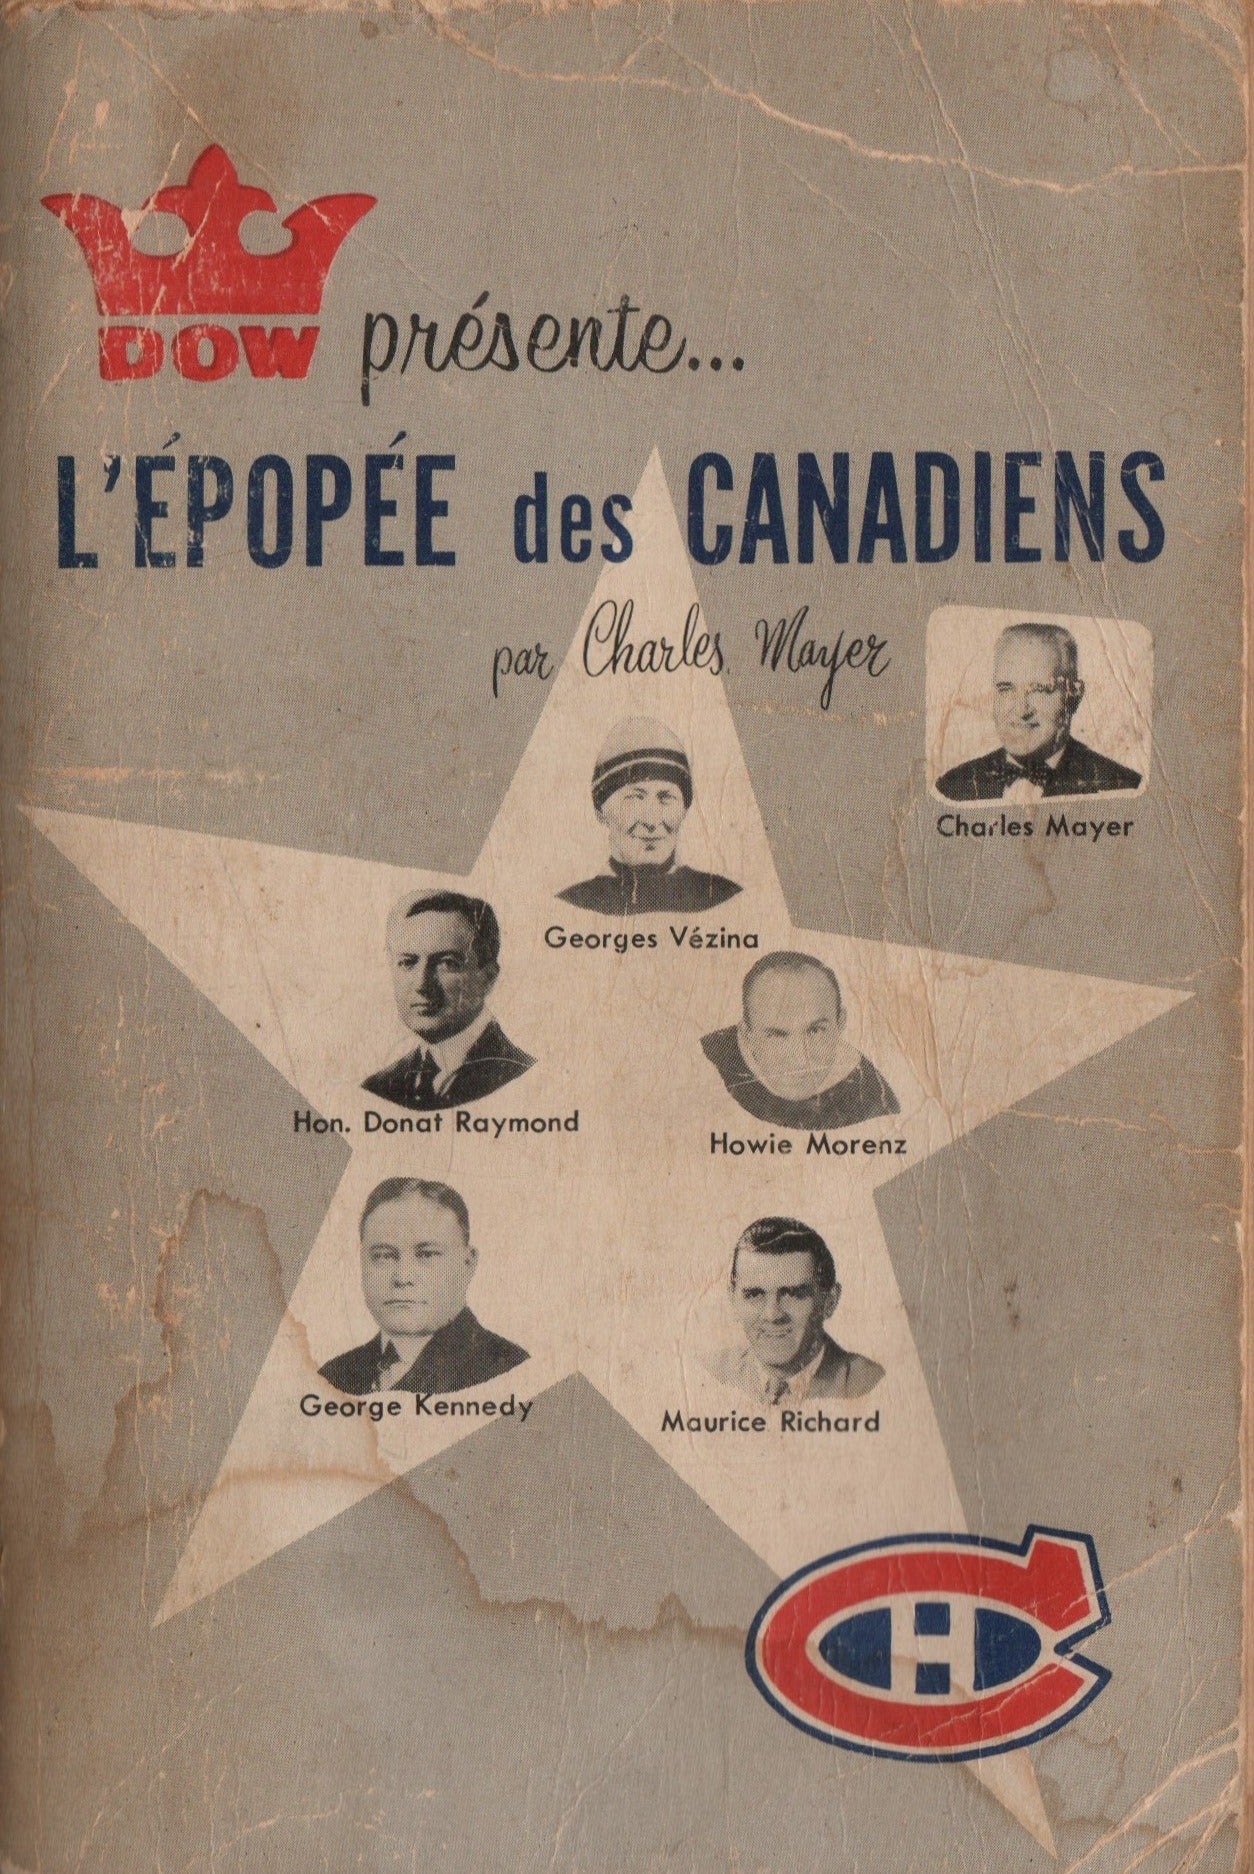 MAYER, CHARLES. Dow présente... L'épopée des Canadiens - De Georges Vézina à Maurice Richard : 46 ans d'histoire, 1909-1955